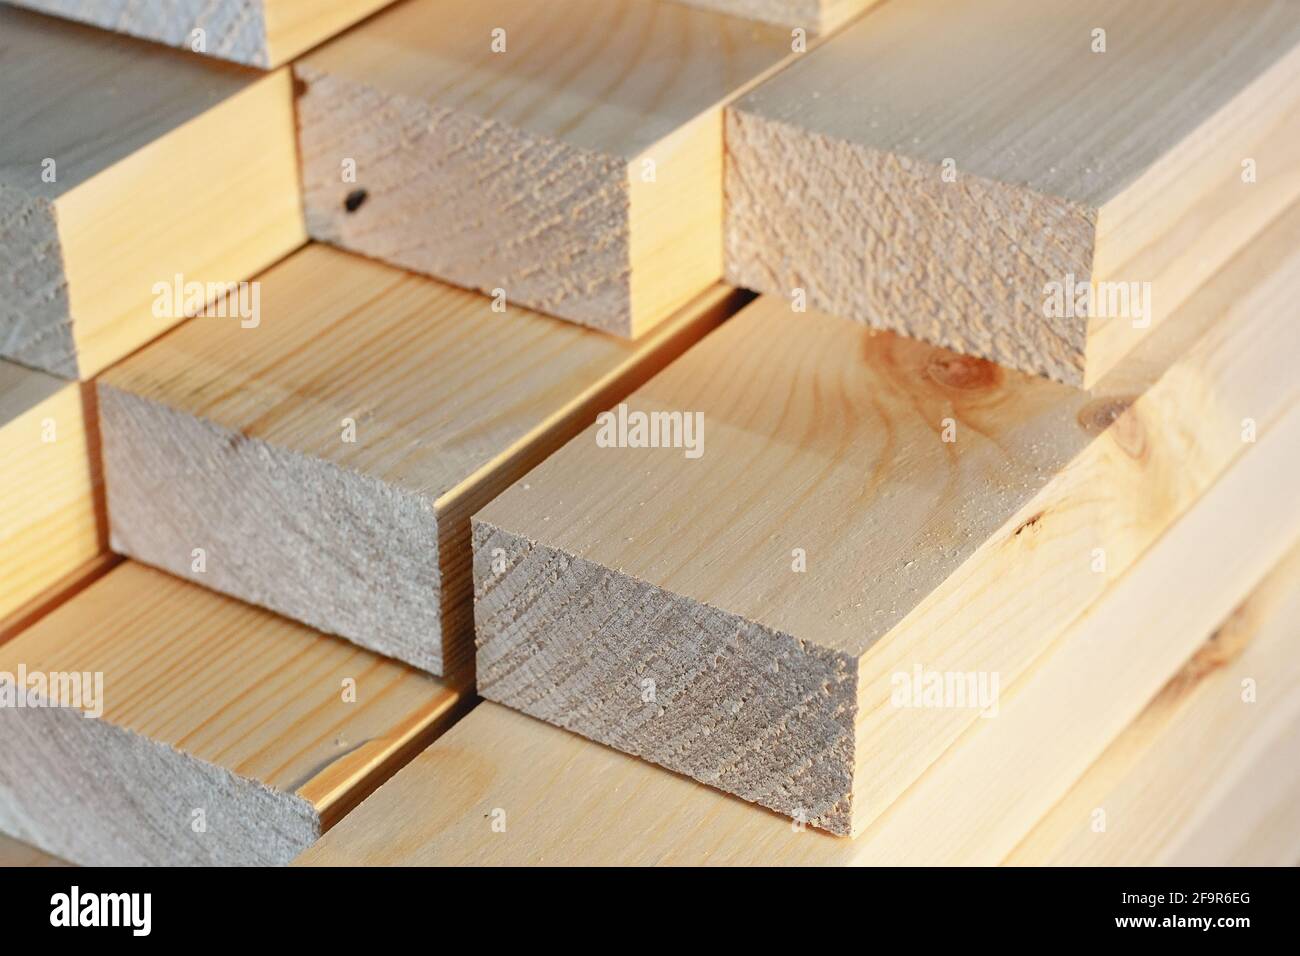 Die Holzstäbe werden in einem Stapel gestapelt. Sägen Trocknen und Vermarktung von Holz. Industrieller Hintergrund. Nahaufnahme der Baumaterialien. Werbefoto Stockfoto